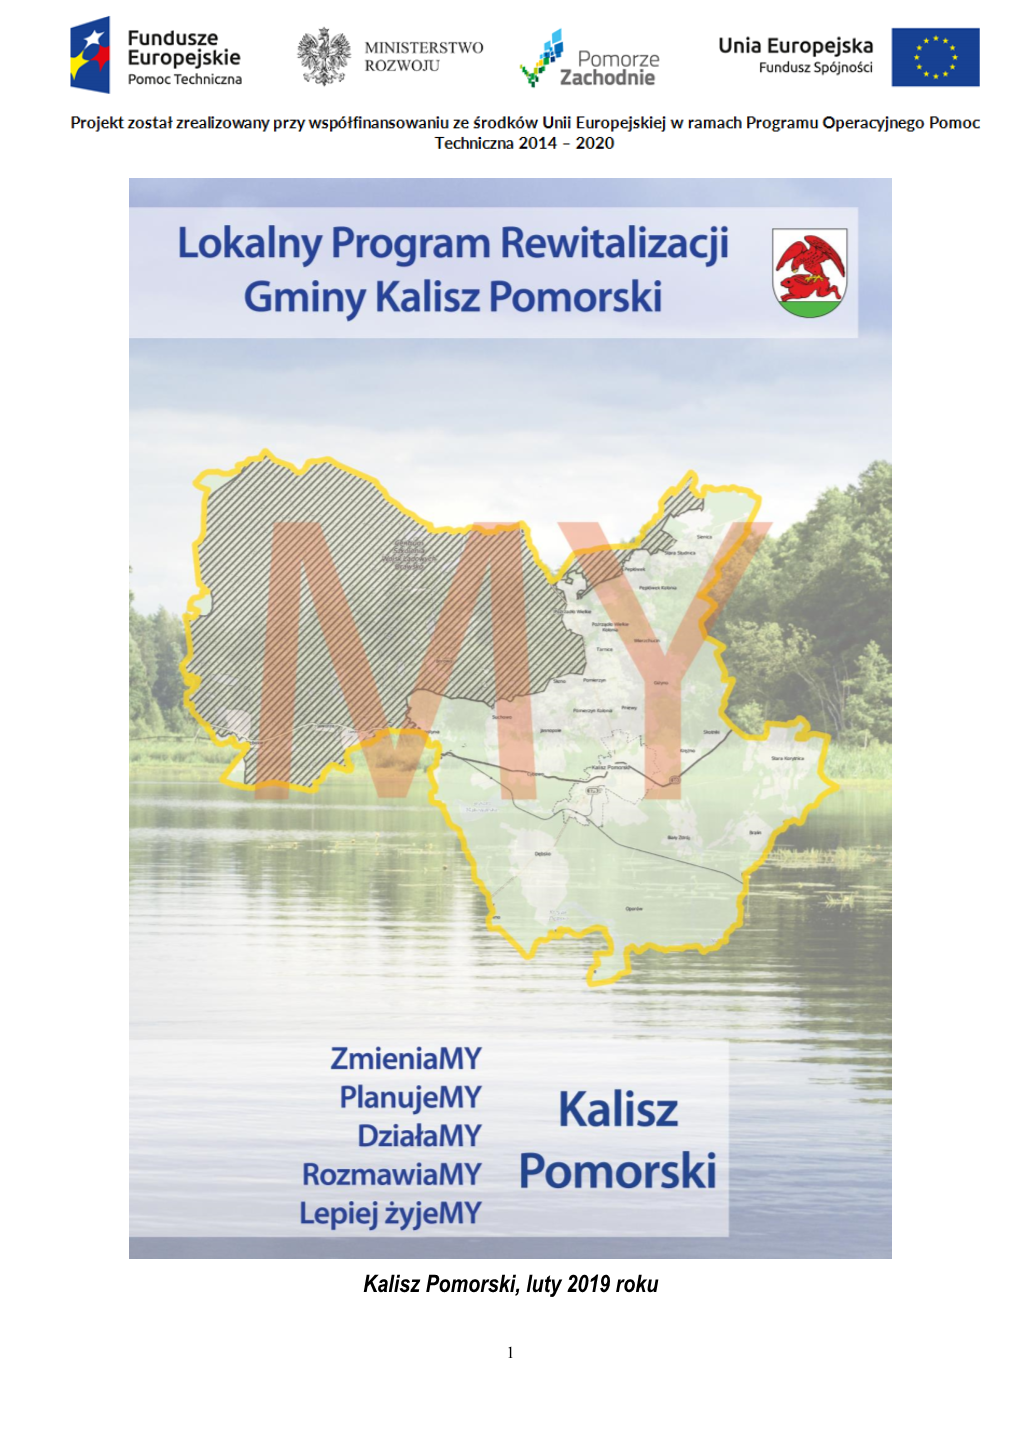 Lokalny Program Rewitalizacji Gminy Kalisz Pomorski Na Lata 2017-2023 Został Przygotowany Przez Zespół Badawczy Konsorcjum Firm 4CS Sp